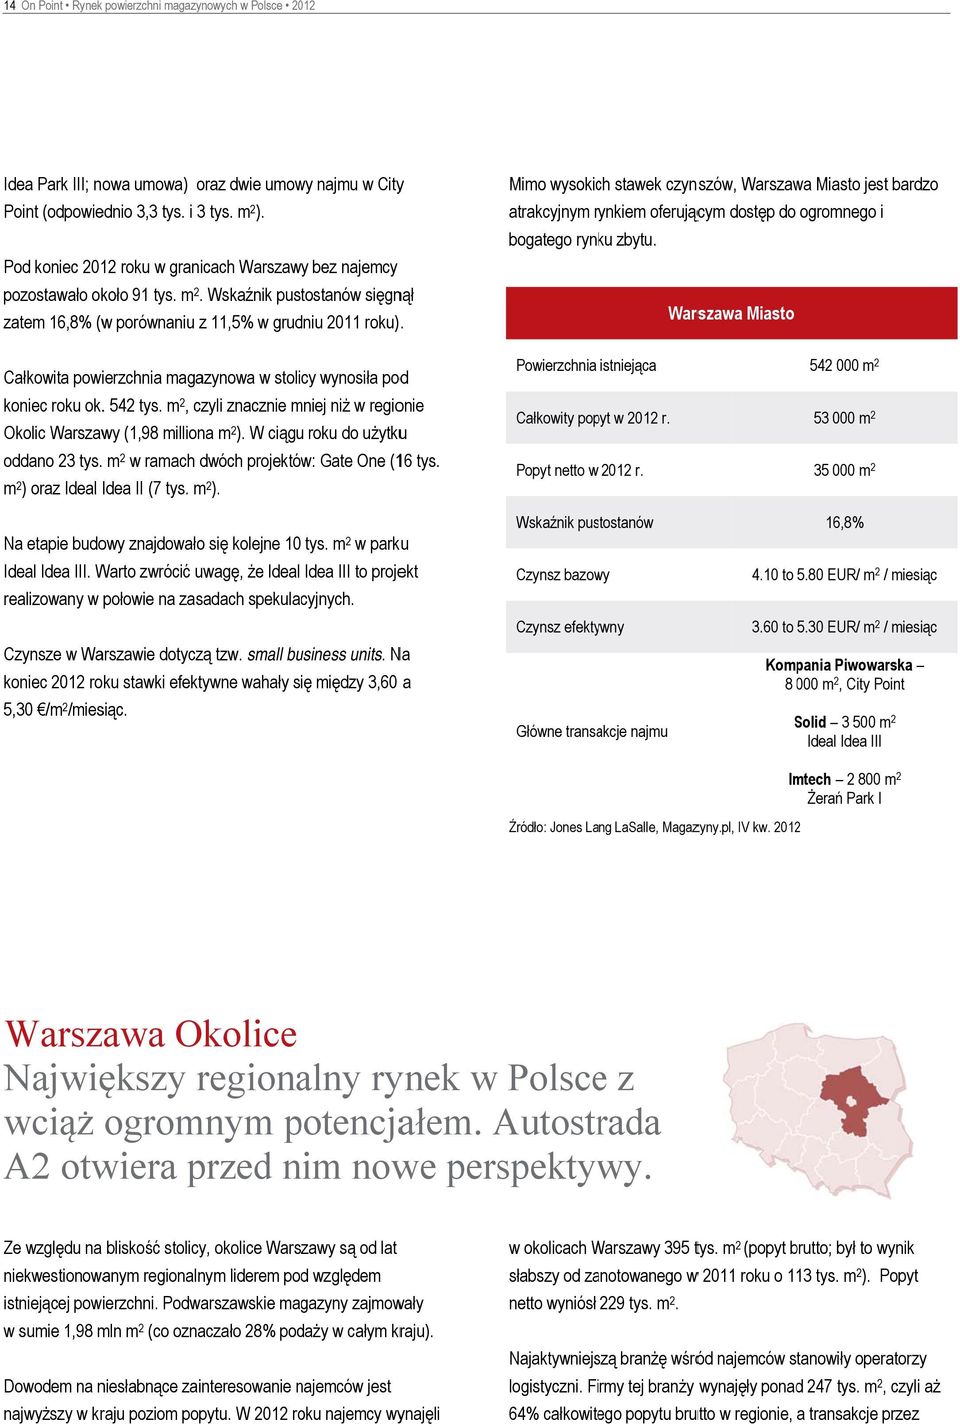 Mimo wysokich stawek czynszów, Warszawa Miasto jest bardzo atrakcyjnym rynkiem oferującym dostęp do ogromnego i bogatego rynku zbytu.